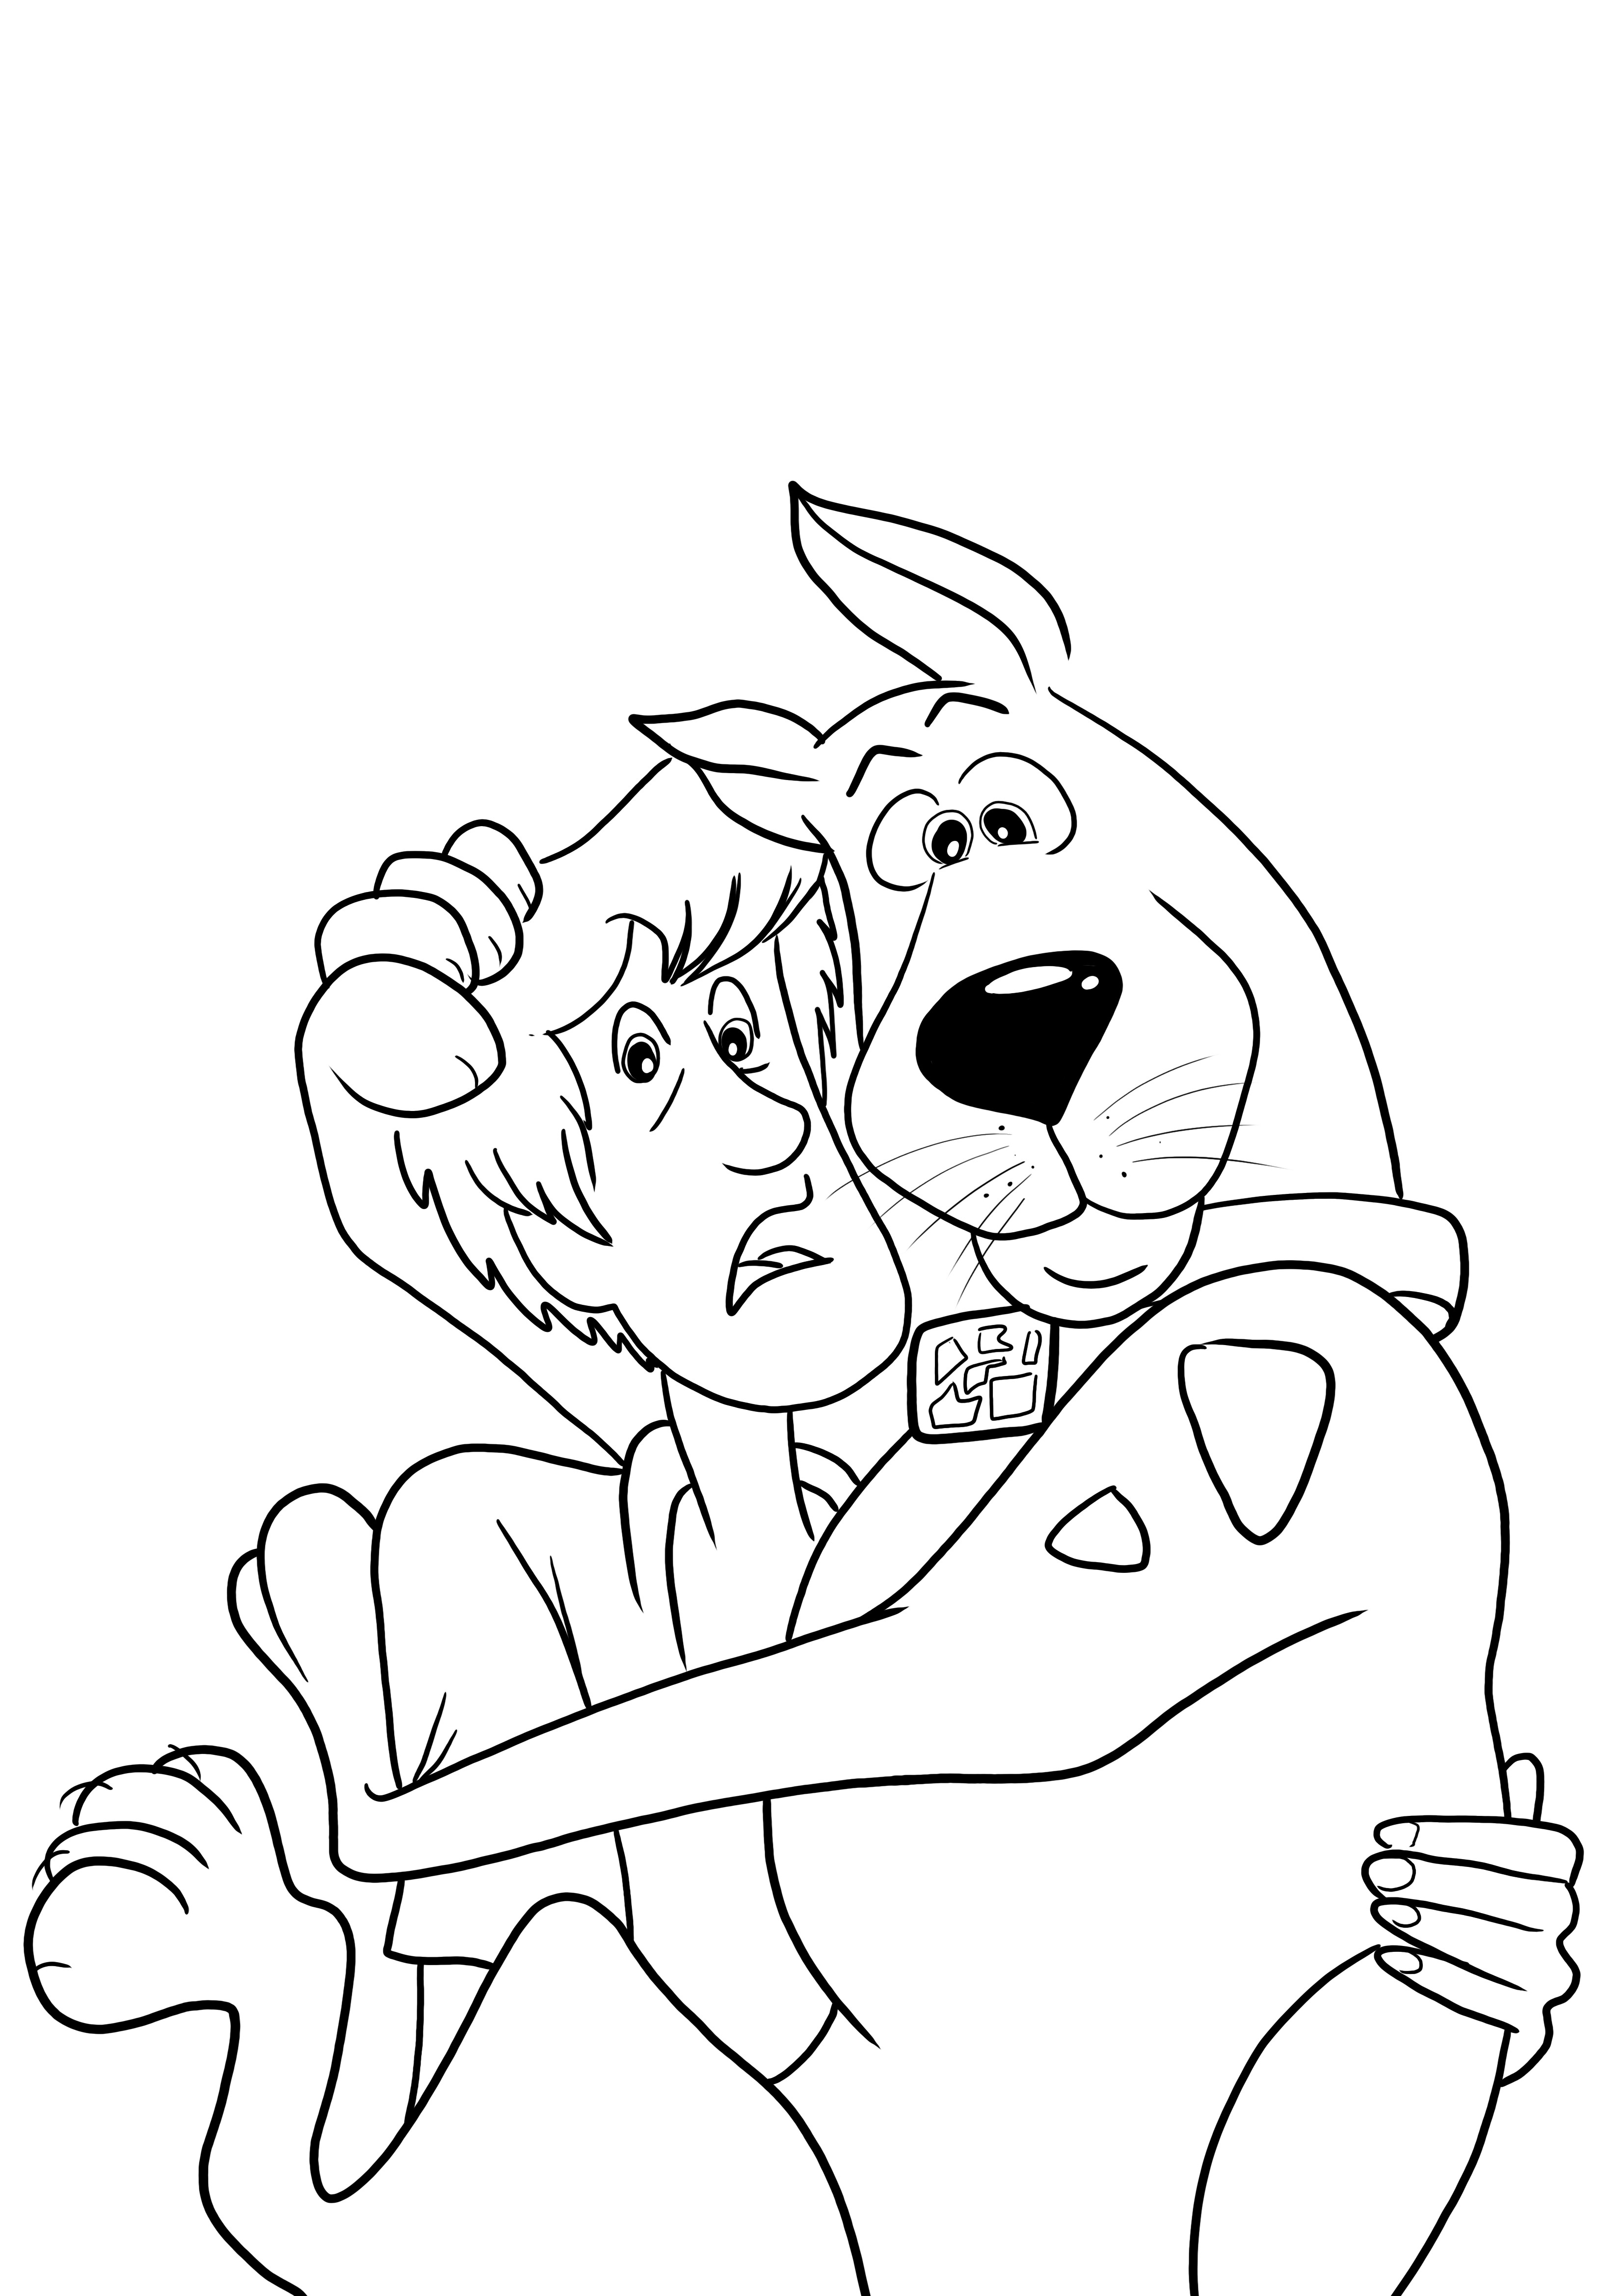 Ilmainen väritysarkki Scooby Doo ja Shaggy pelkäävät ladata lapsille